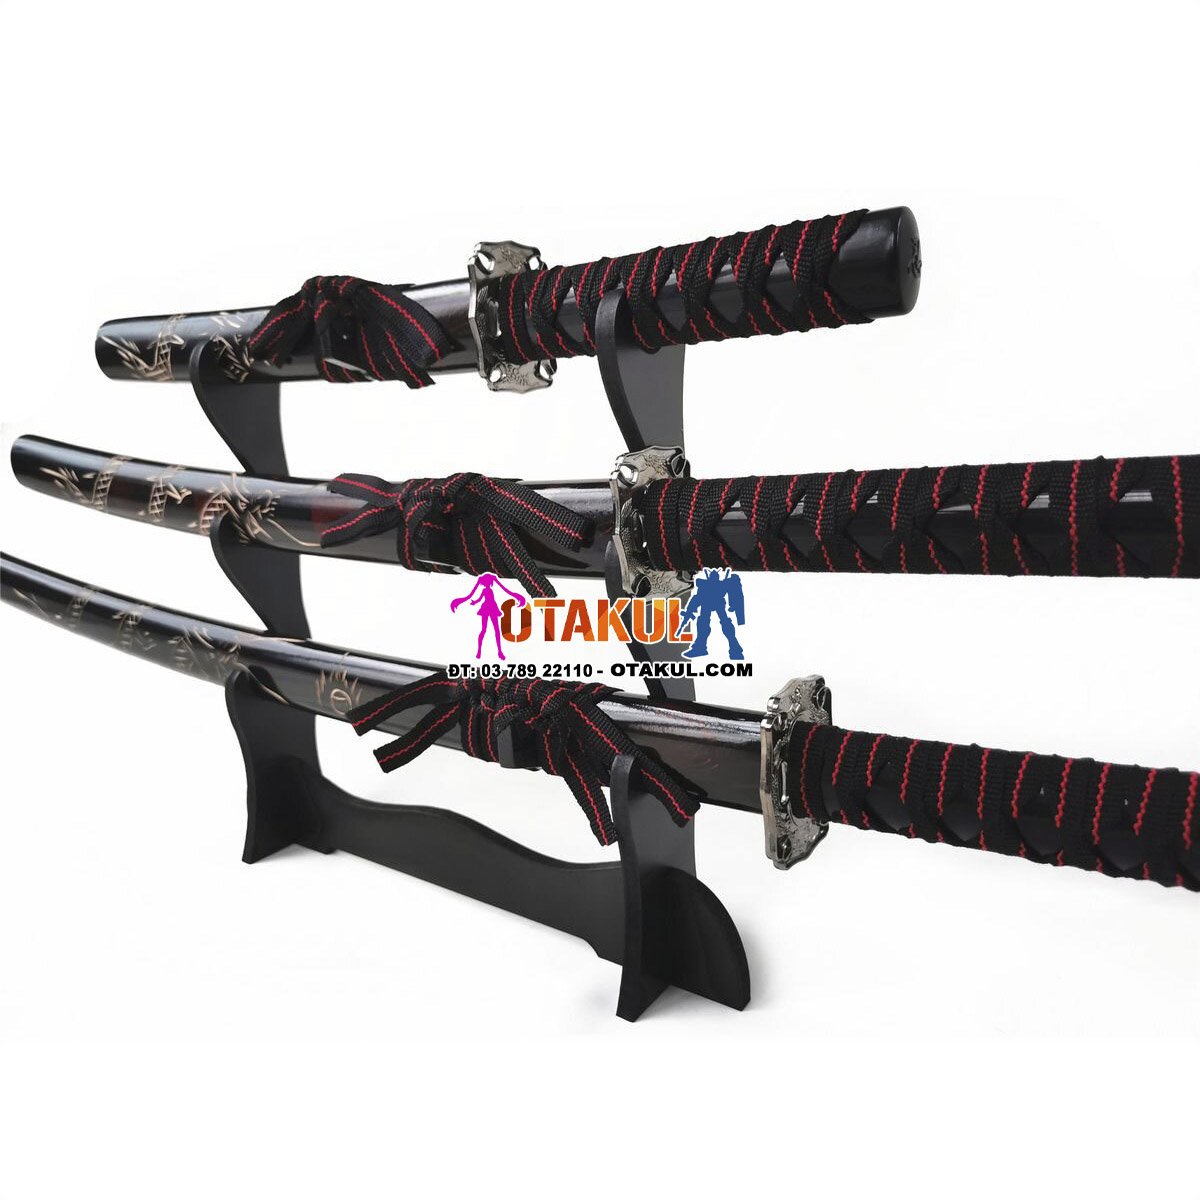 Bộ 3 Kiếm Nhật Samurai Đen Vân Đỏ Chạm Khắc Rồng Tinh Xảo